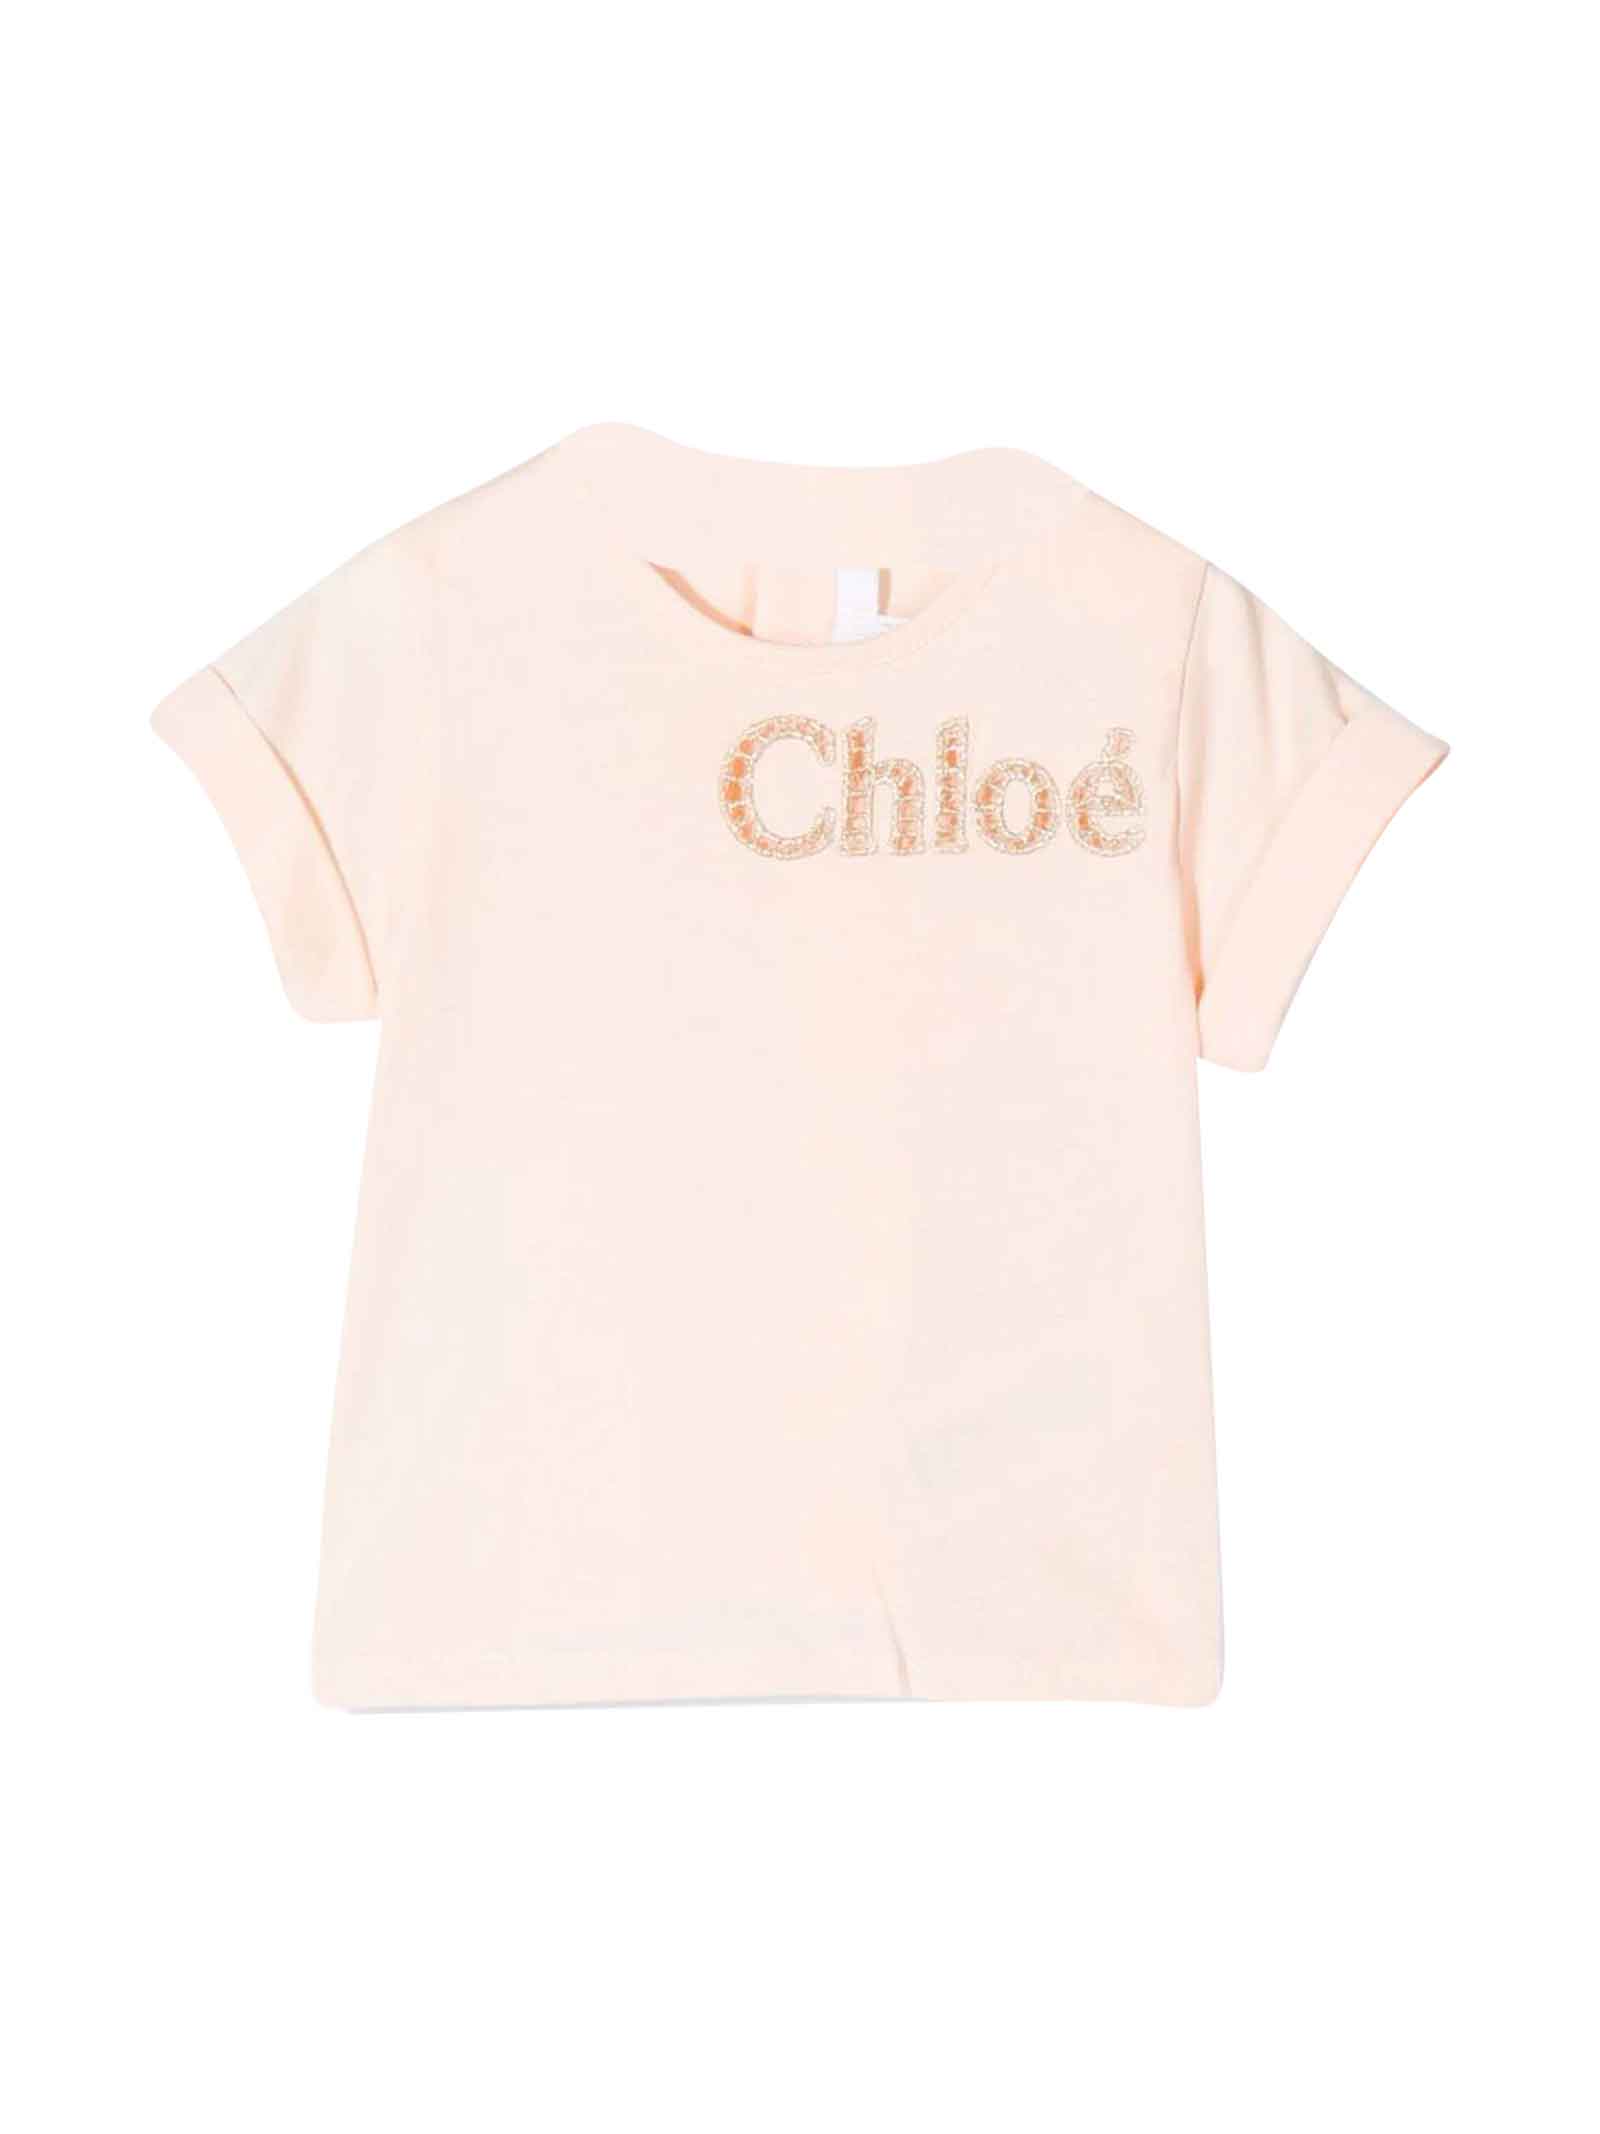 Chloé Pink T-shirt With Print Chloe Kids